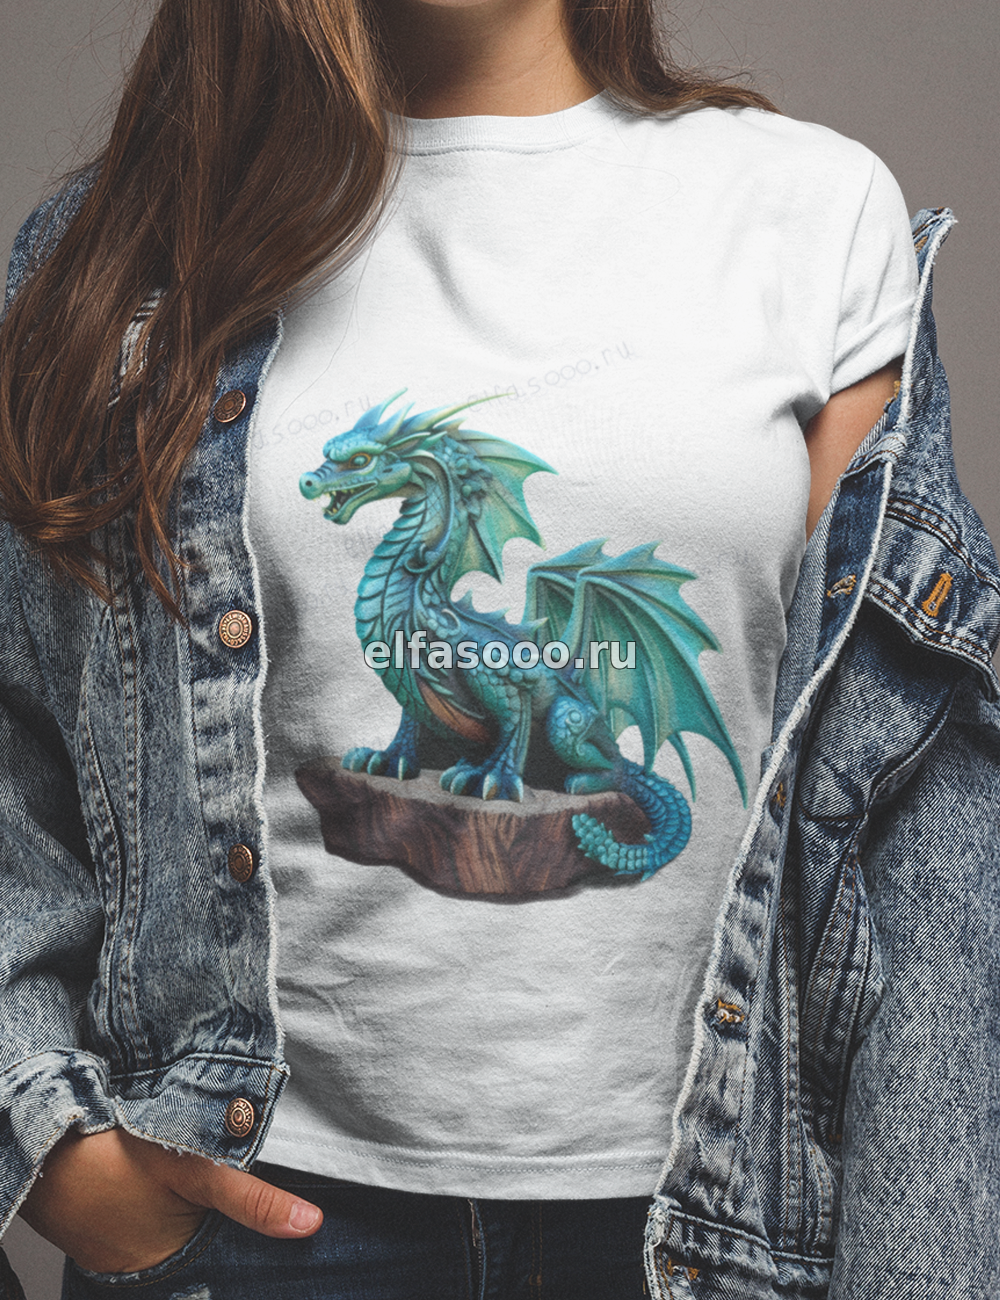 "дракон-защитник" на футболке